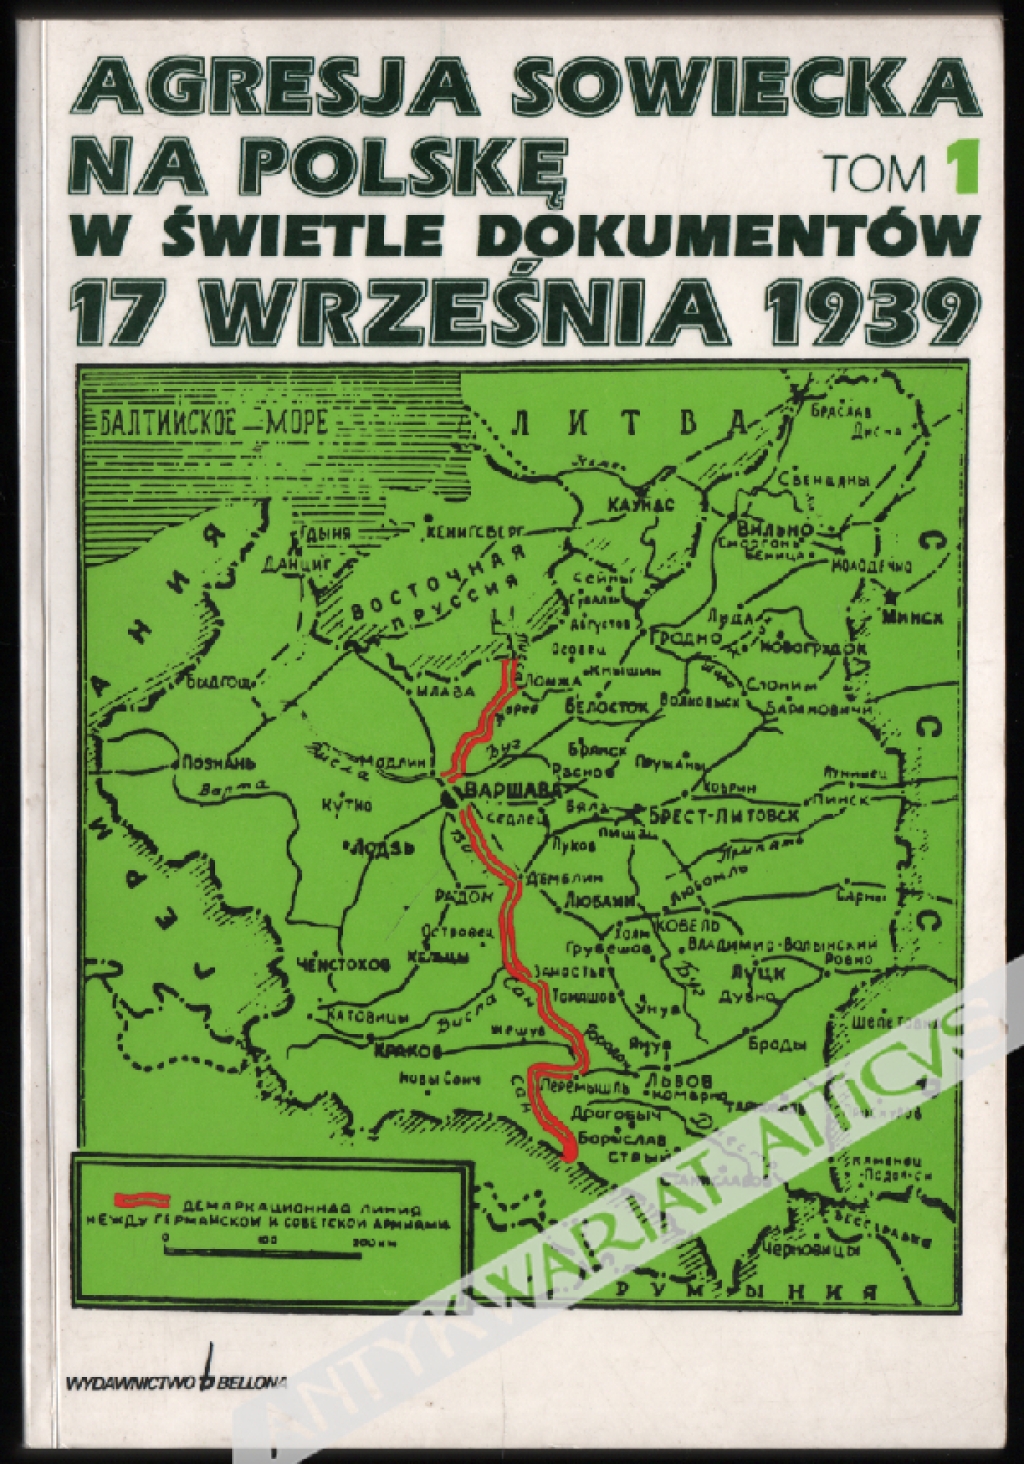 Agresja sowiecka na Polskę 17 września 1939 w świetle dokumentów. Tom I: Geneza i skutki agresji